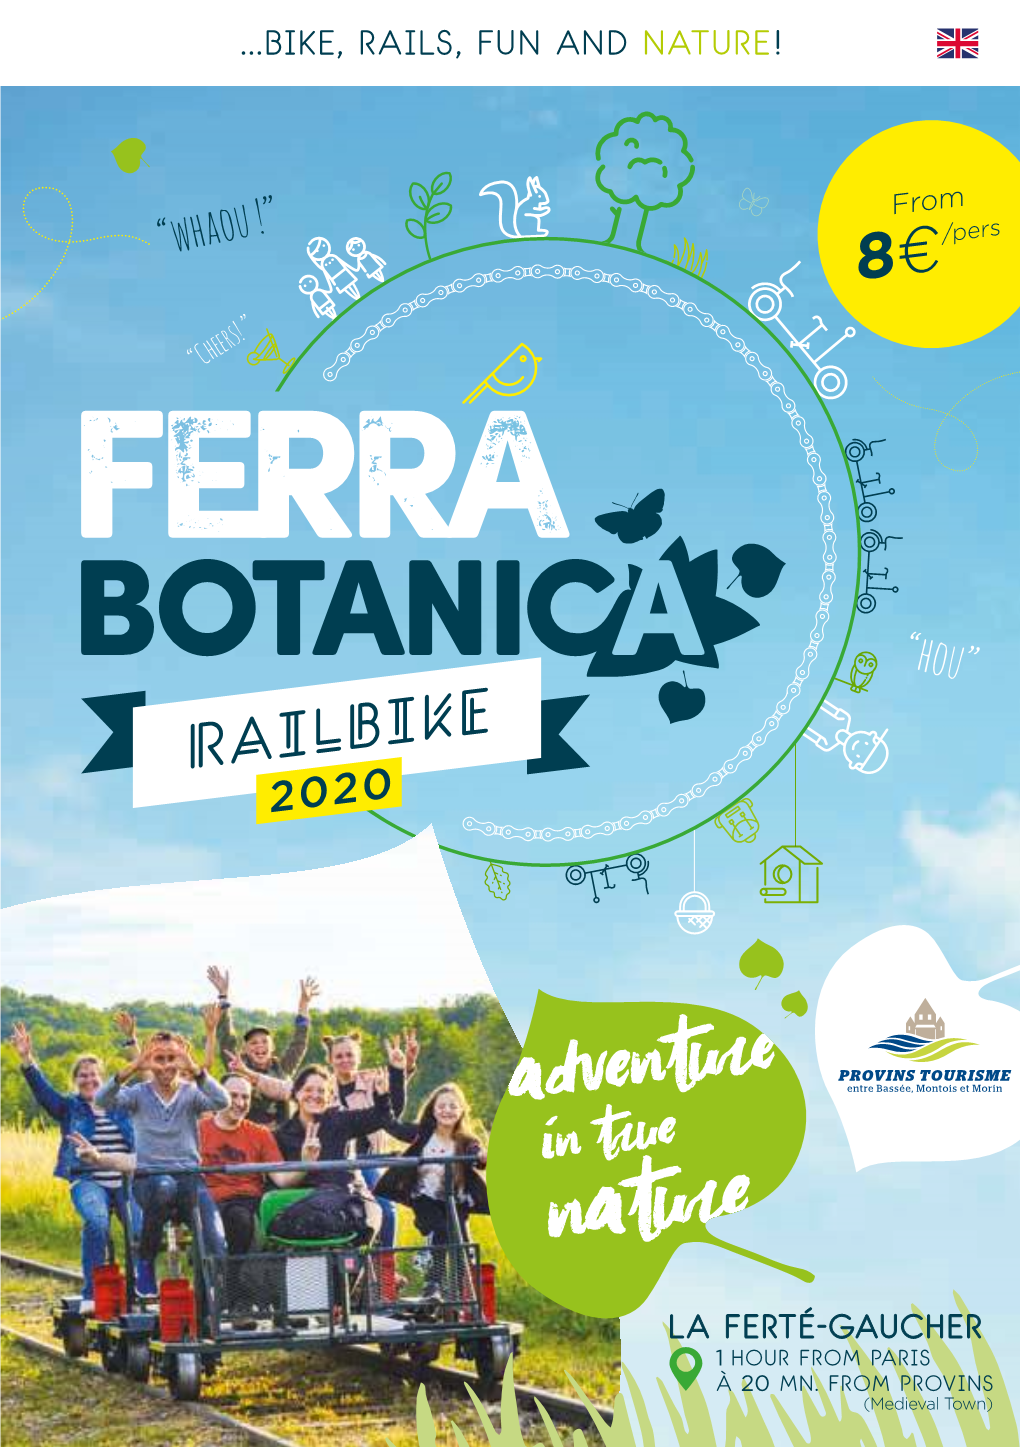 Ferra Botanica, All-Natural Railbike Adventure in La Ferté-Gaucher